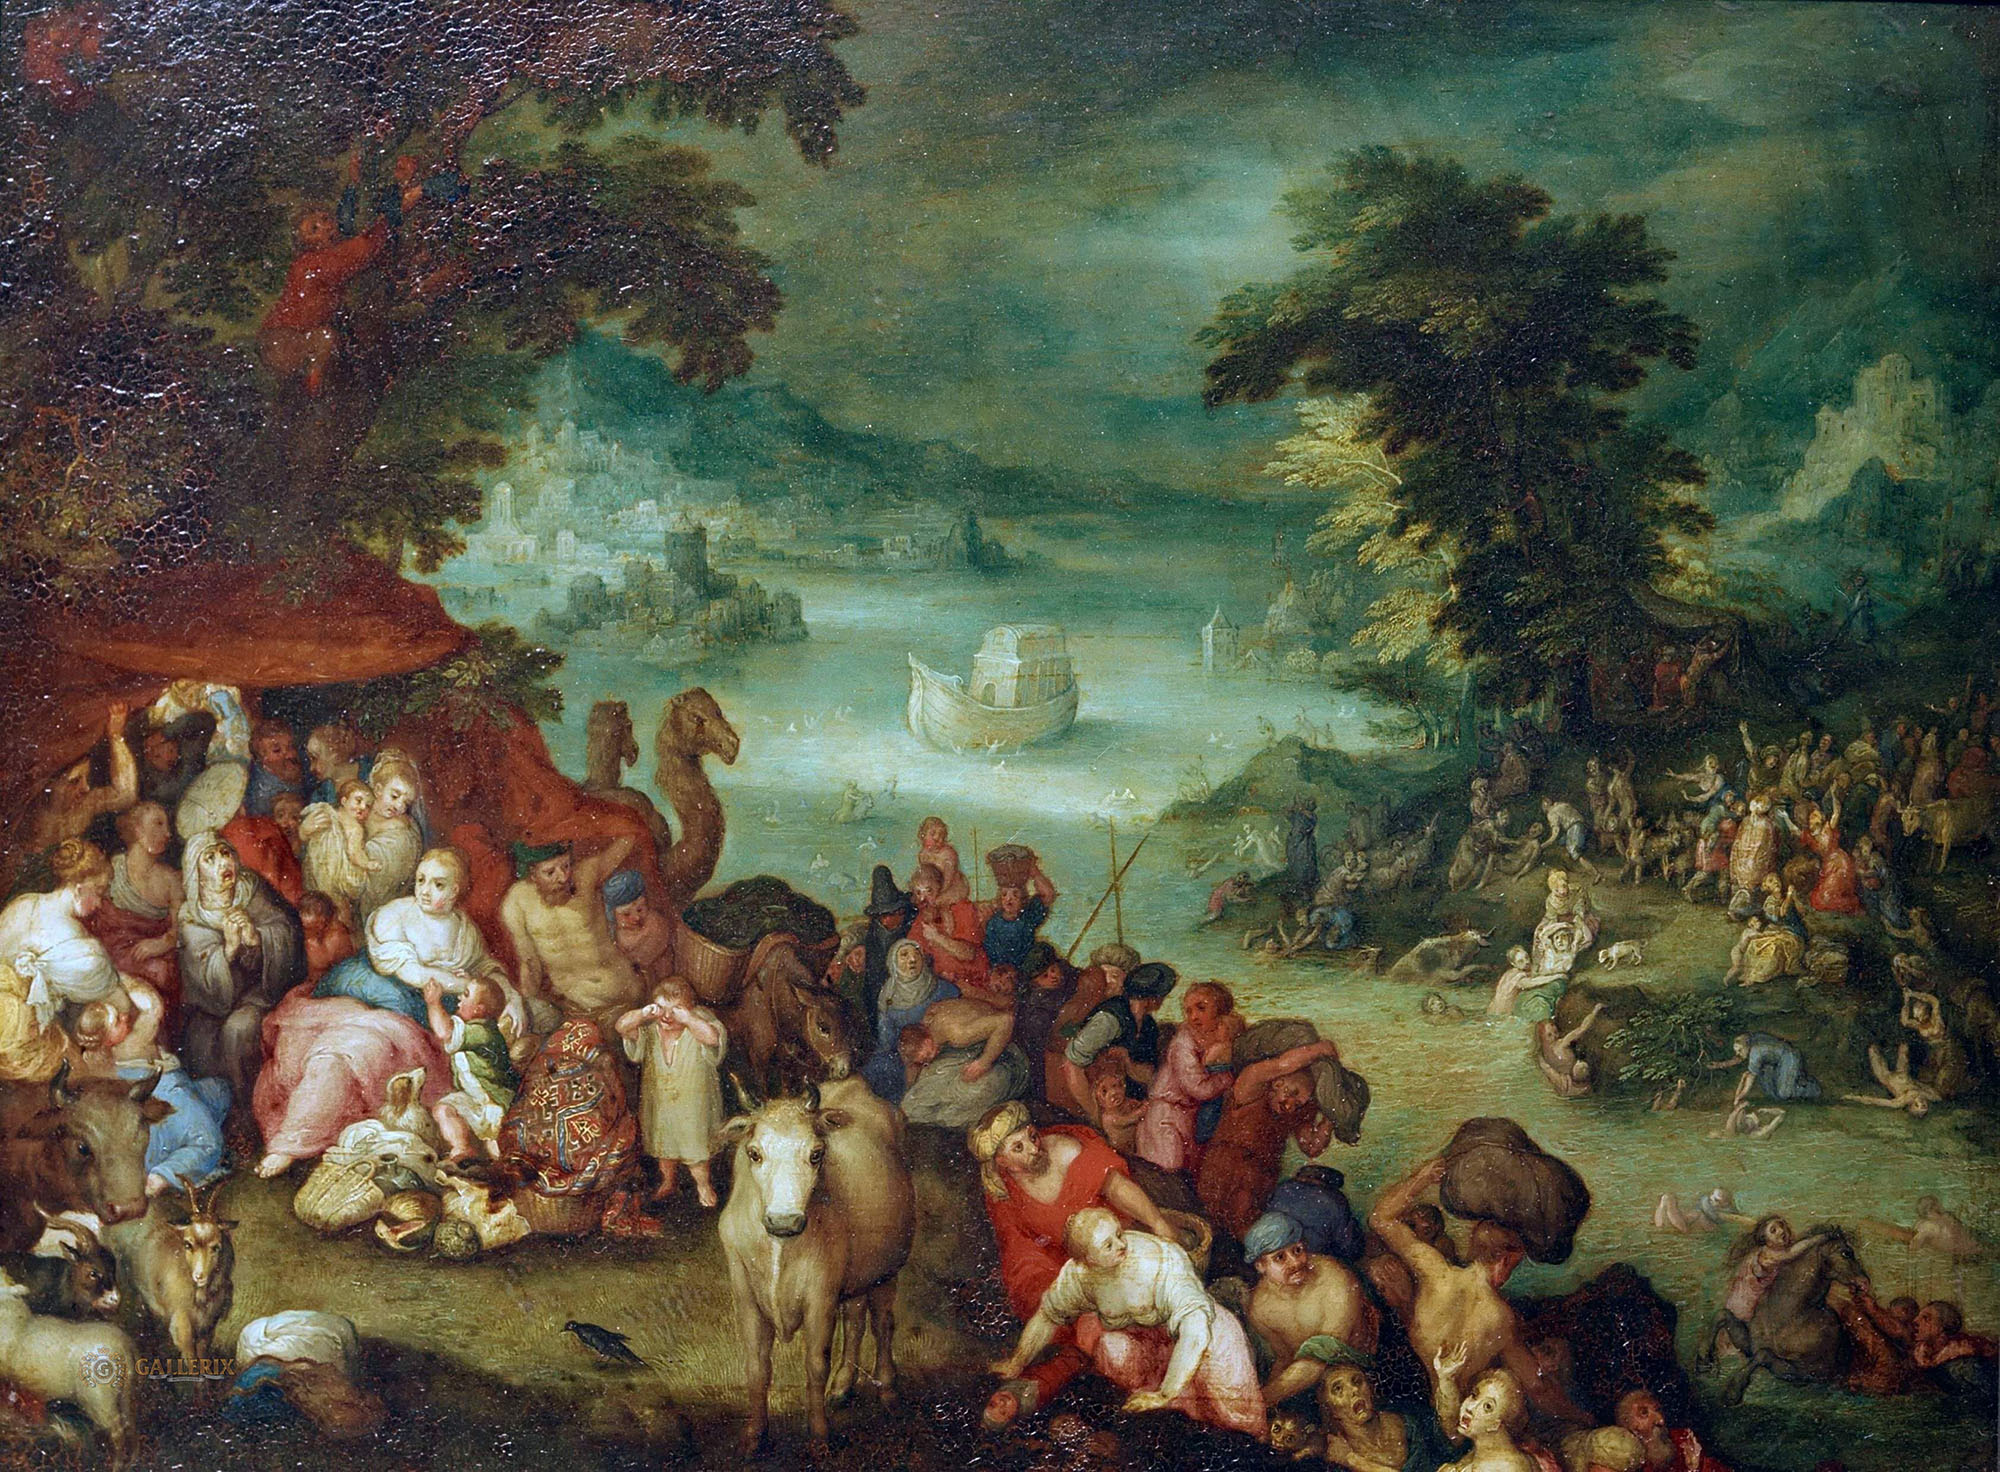 Ян Брейгель Старший. "Всемирный потоп". Около 1602. Кассельская картинная галерея, Кассель.